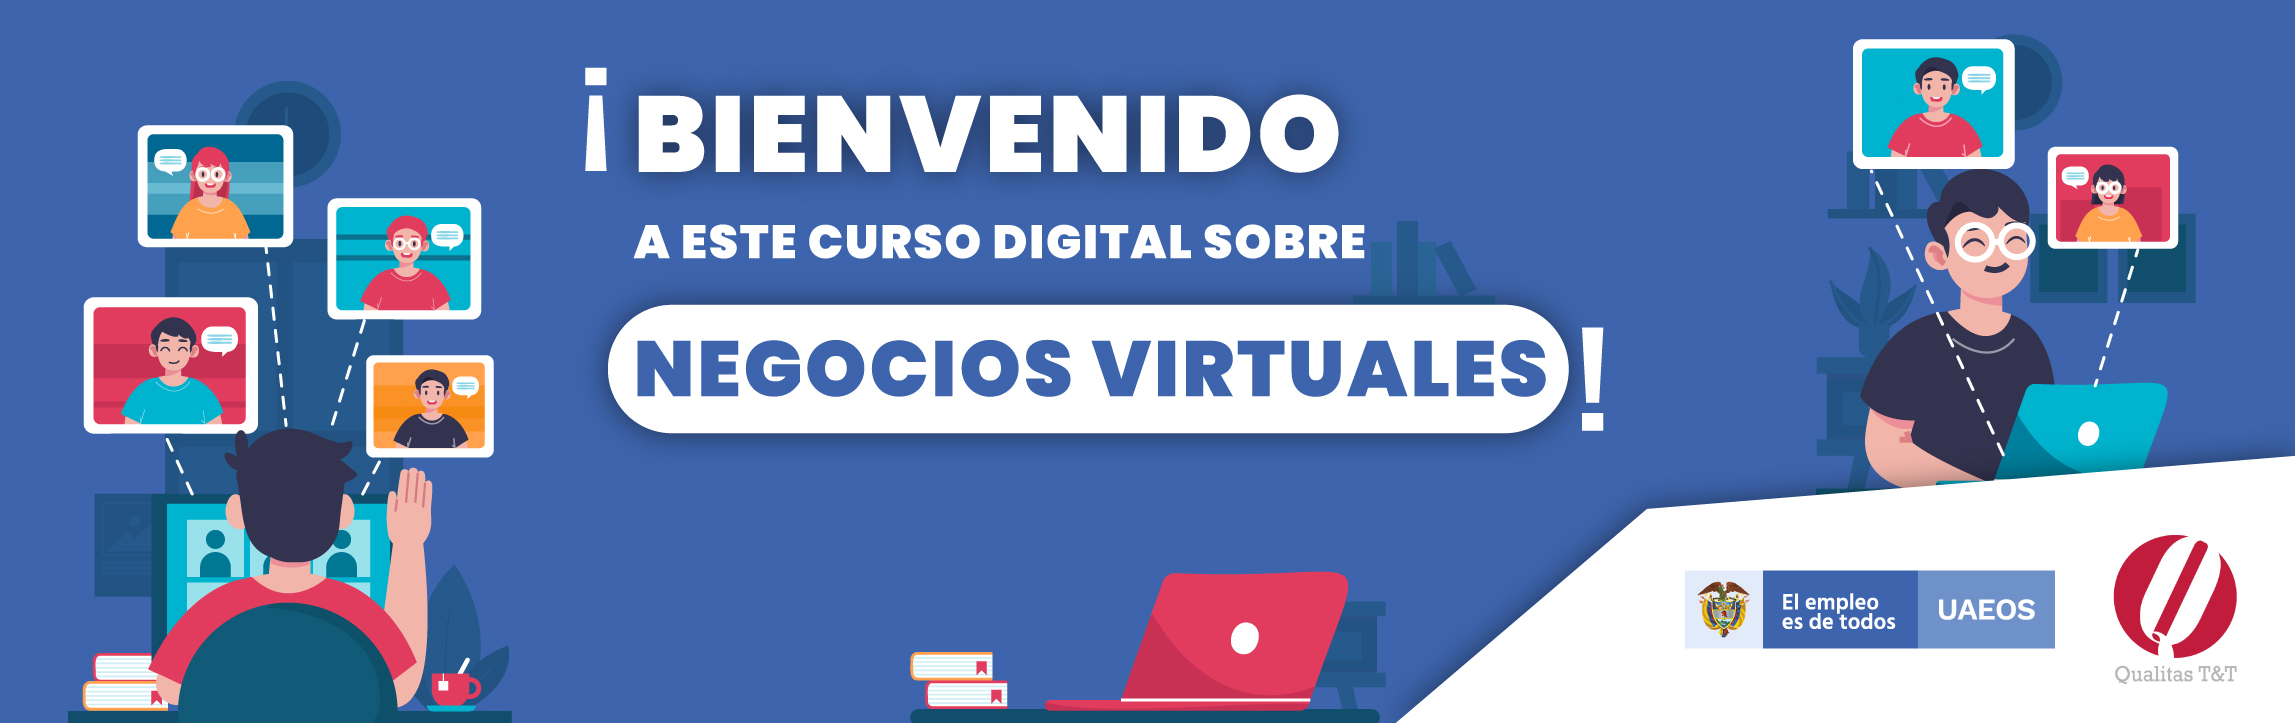 Bienvenida al curso digital sobre Negocios Virtuales